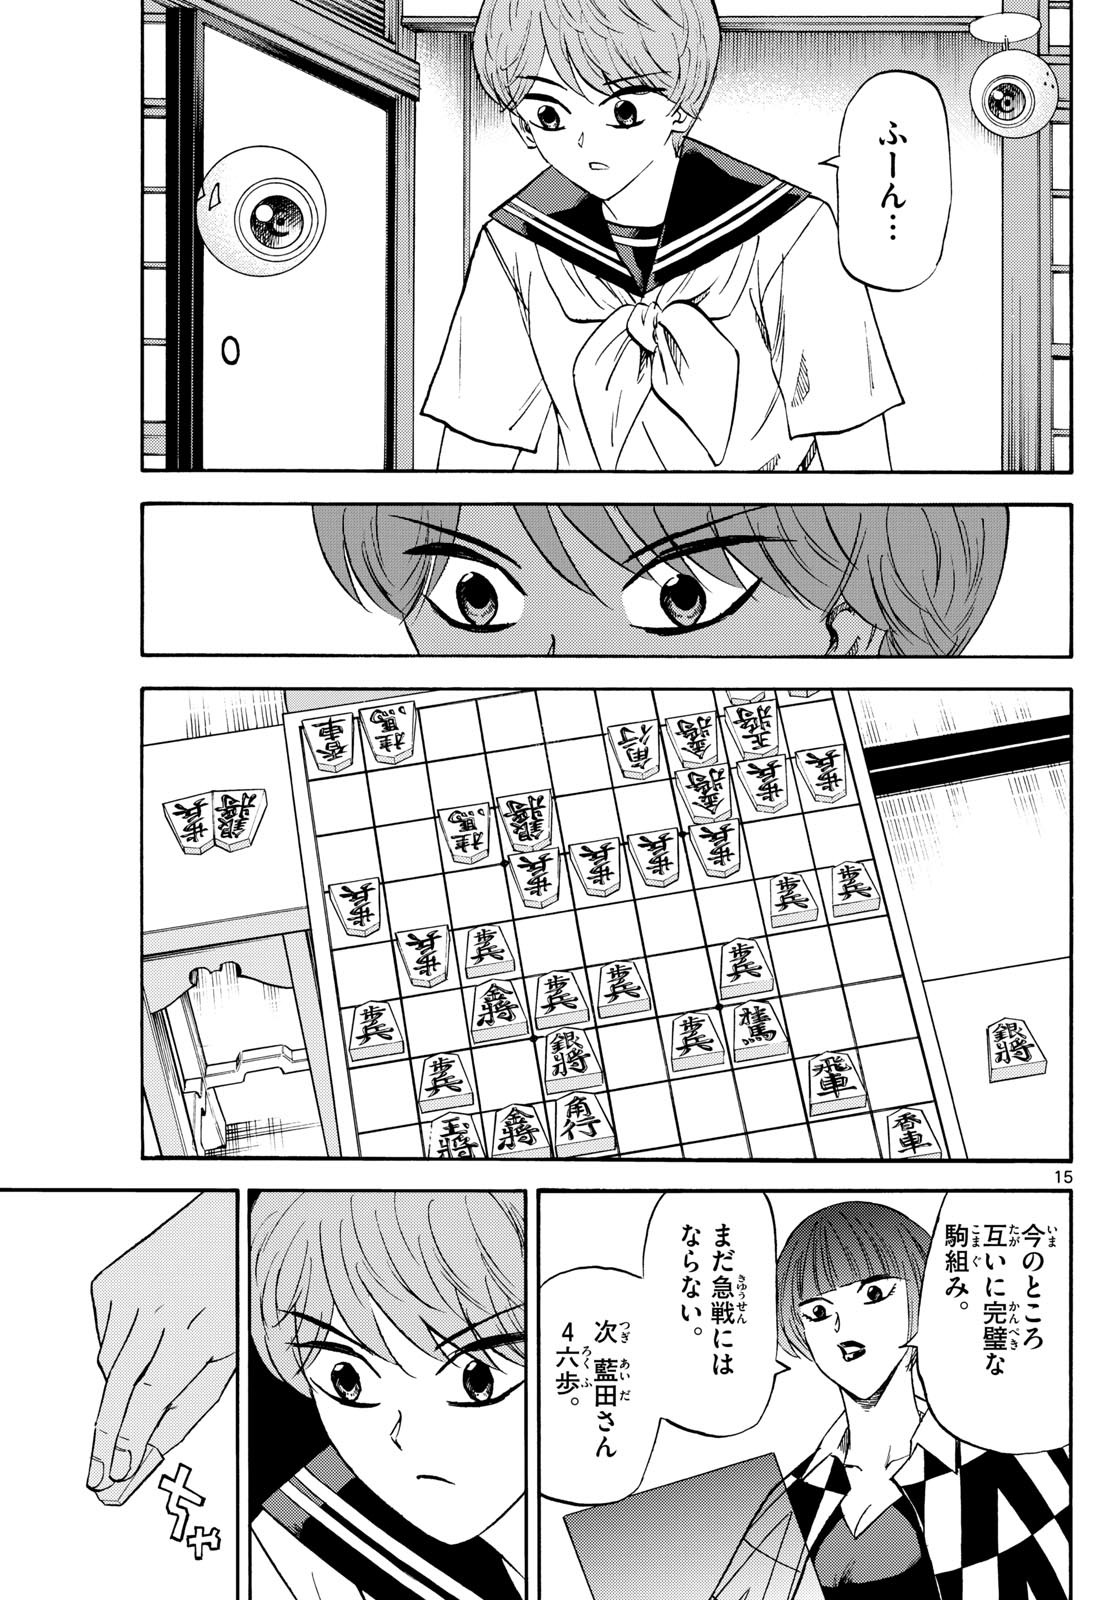 Tatsu to Ichigo - Chapter 197 - Page 15